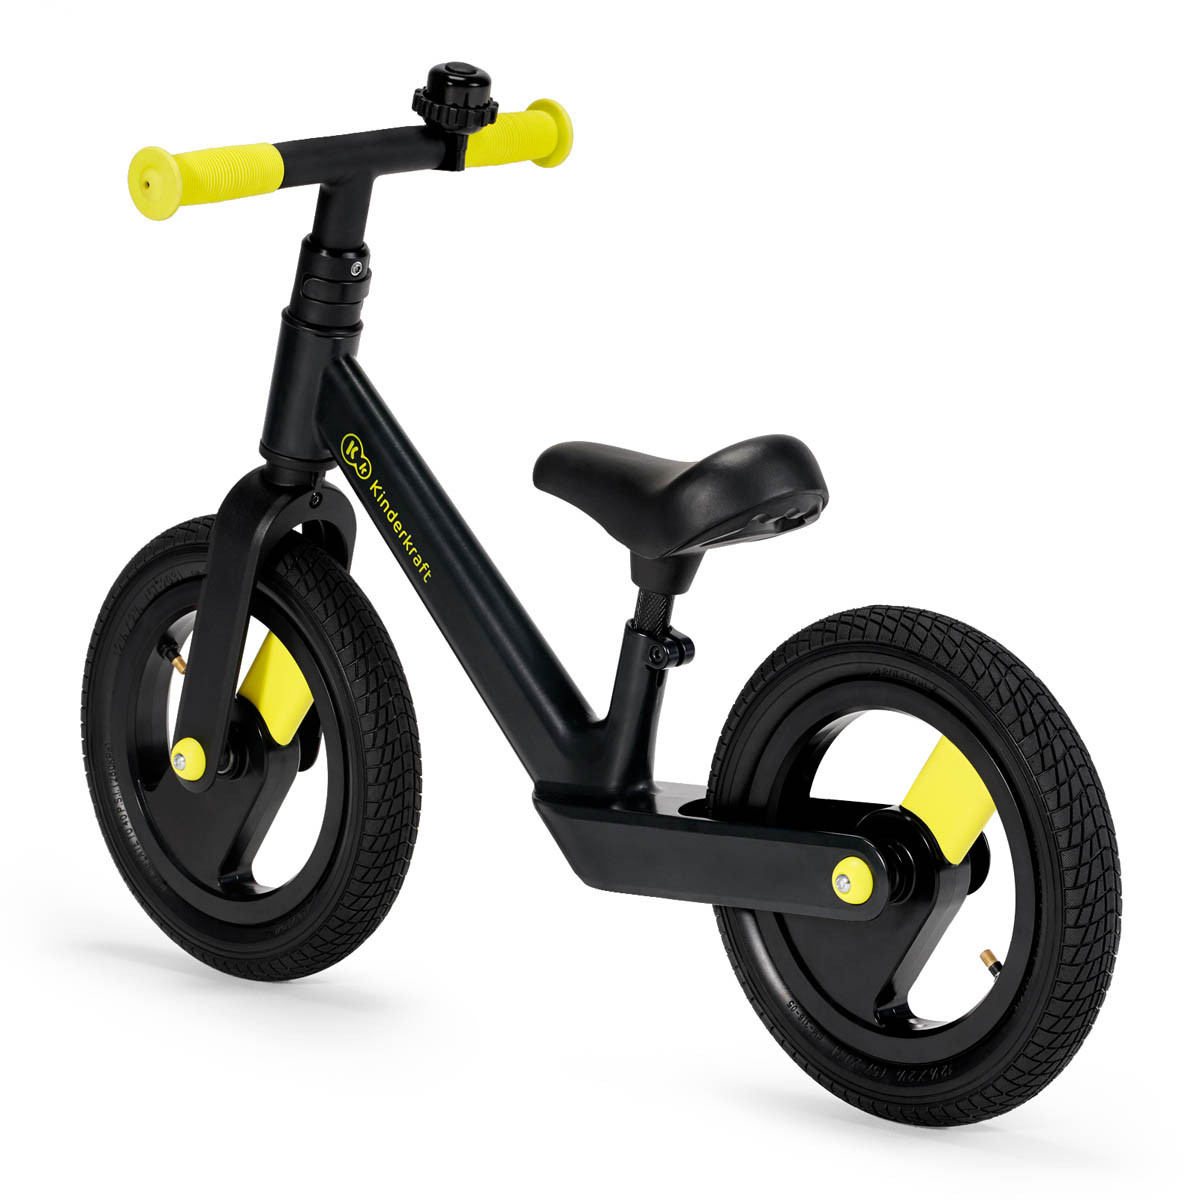 Kinderkraft goswift bicicleta de equilibrio super ligera con el marco de una aleación de magnesio.